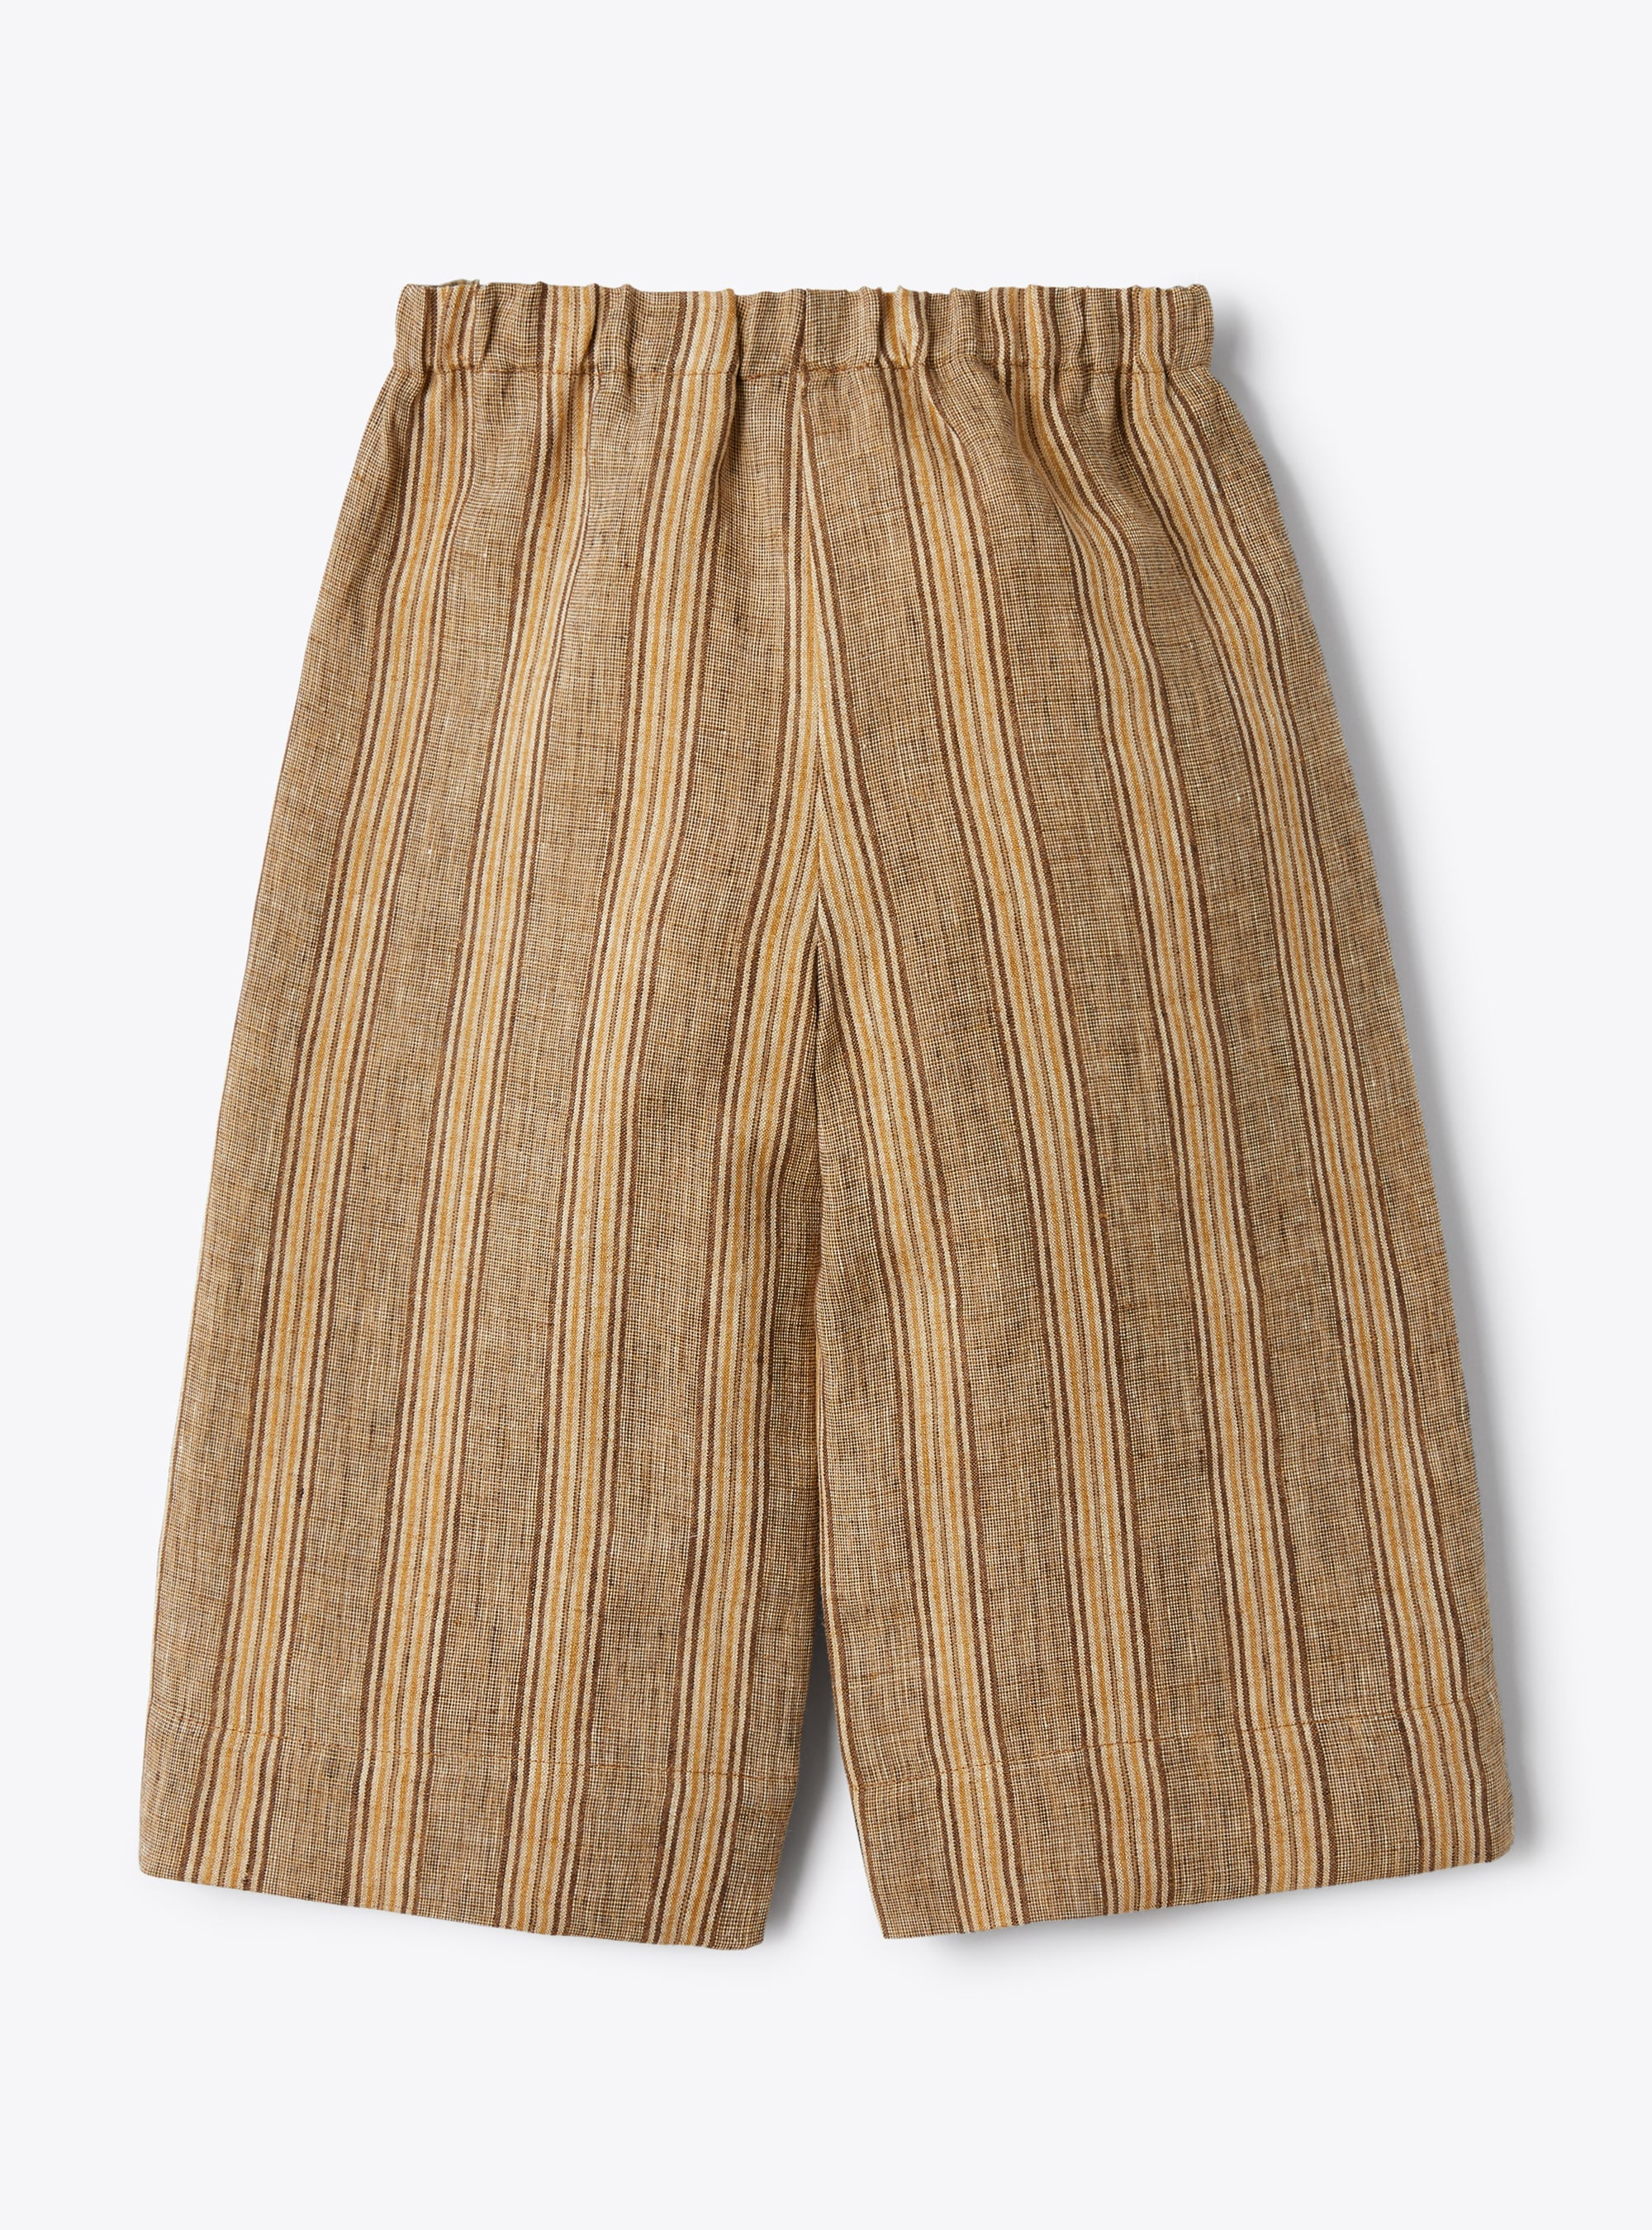 Pantalone capri in lino melange a righe color noce - Marrone | Il Gufo